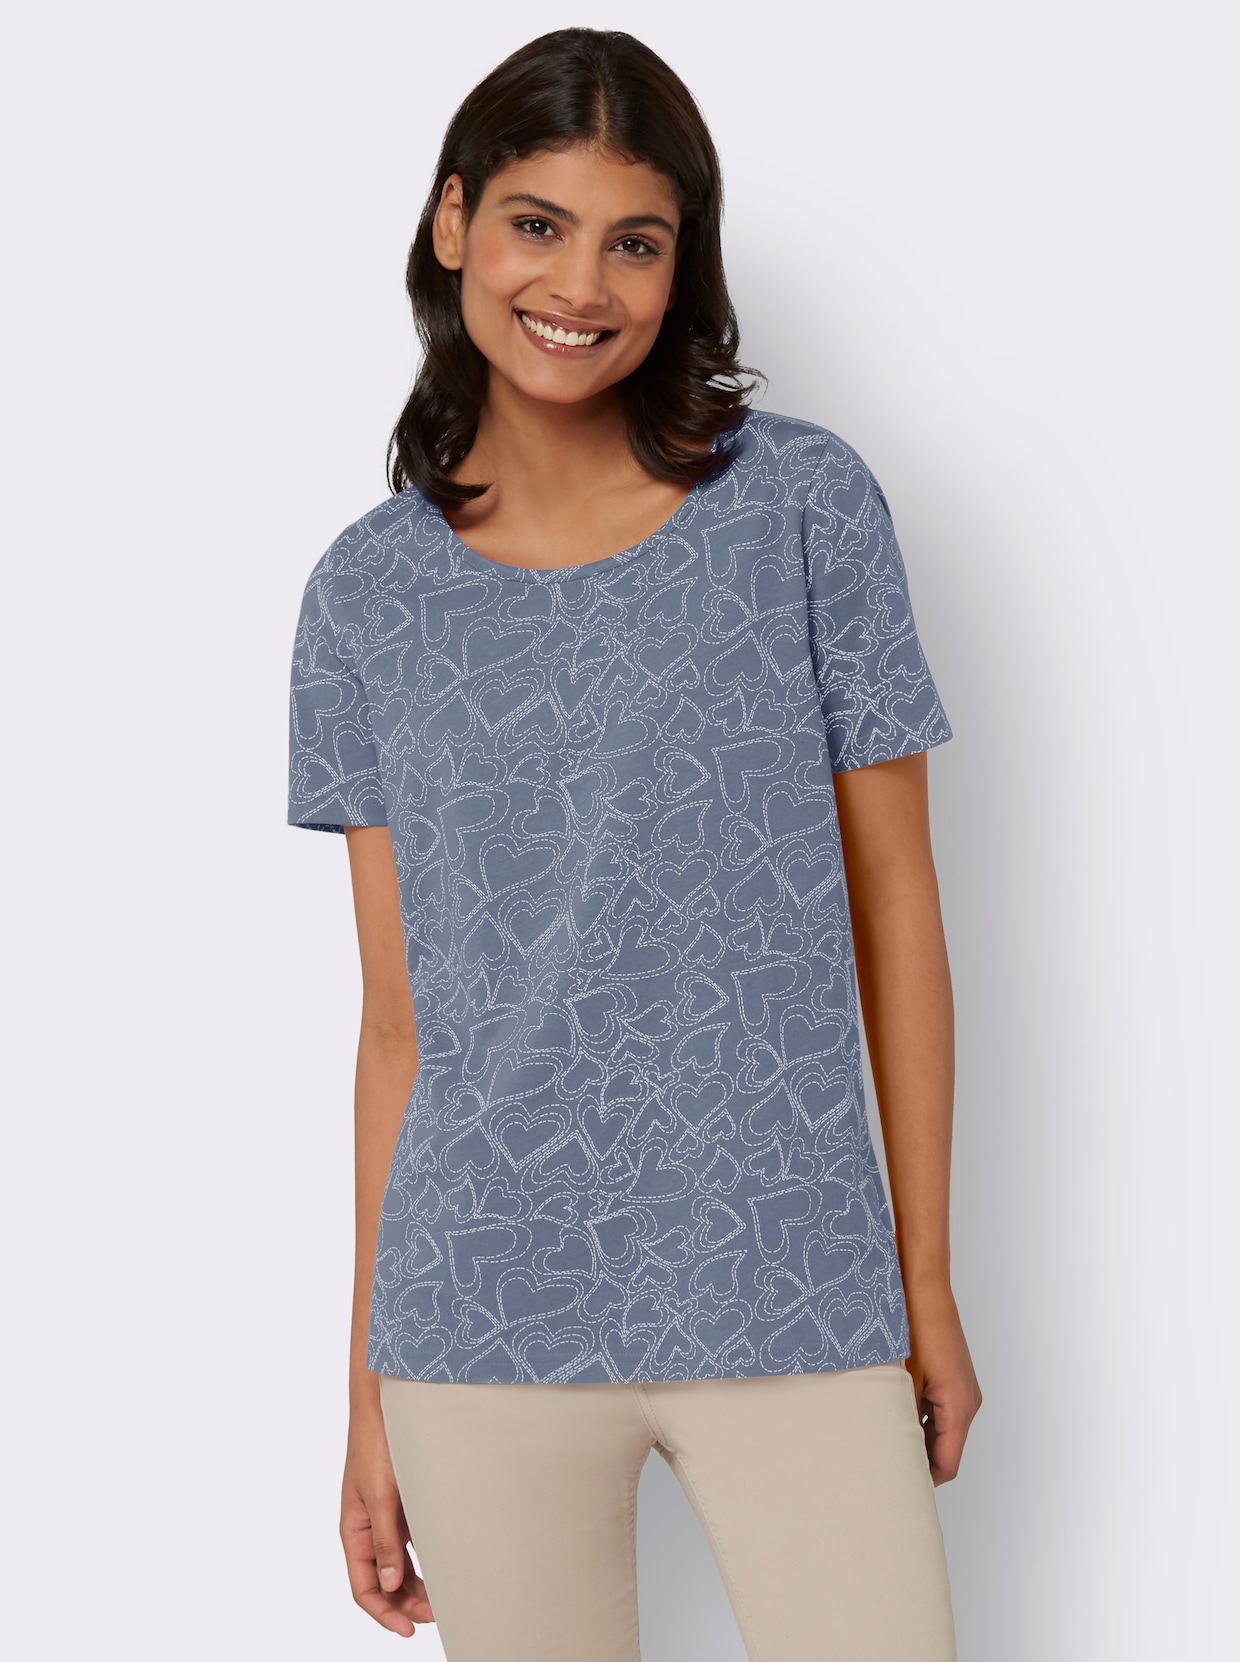 T-shirt - duvblå, tryckt